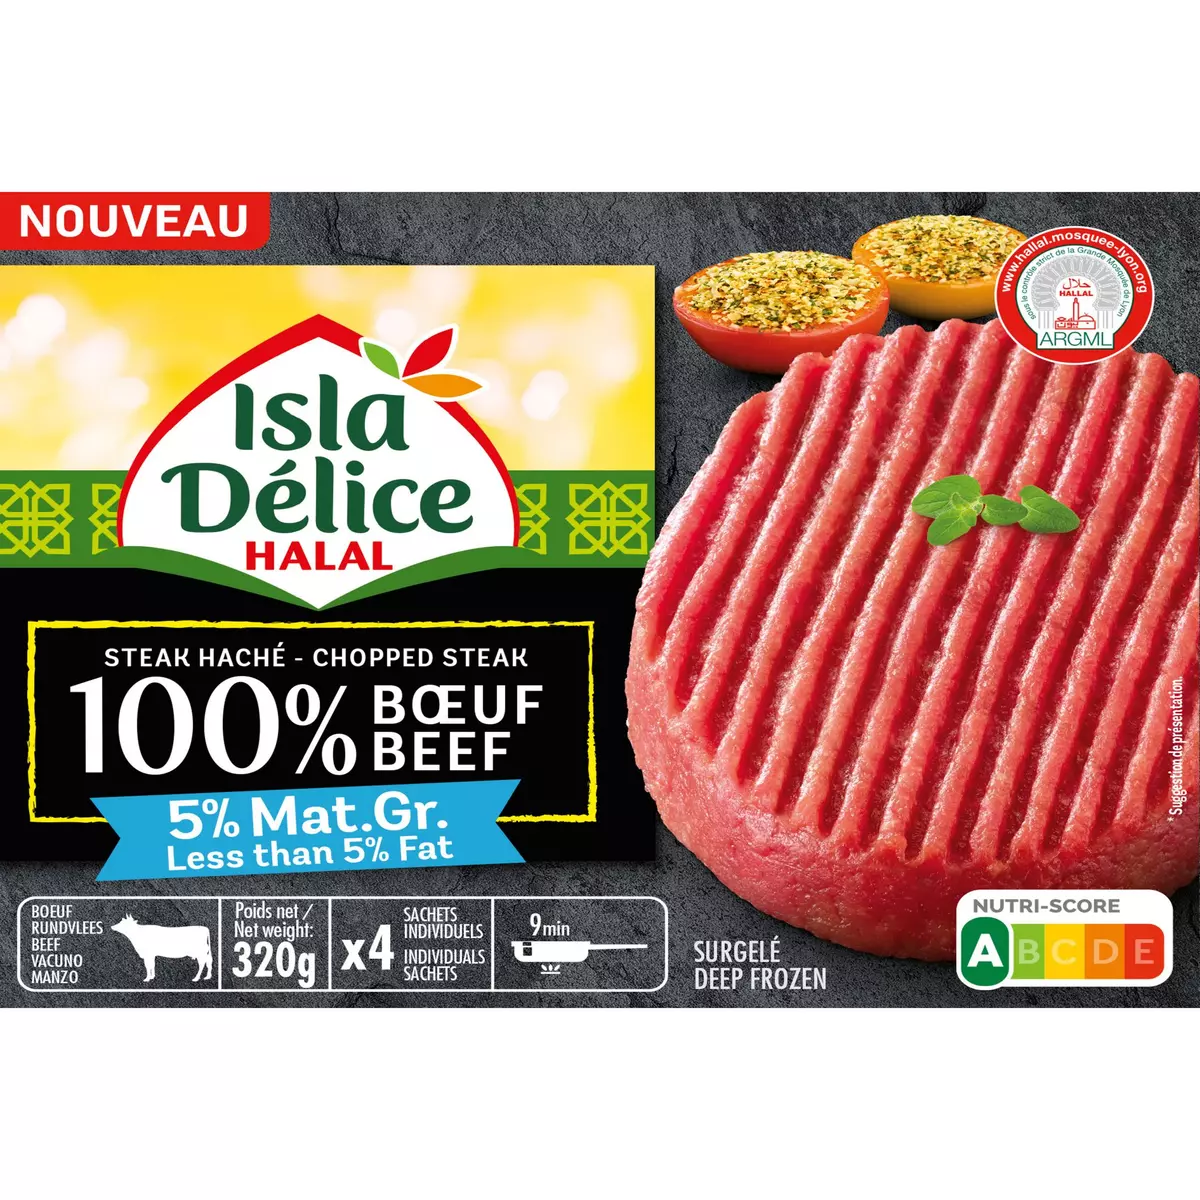 ISLA DELICE Steak haché pur boeuf hallal 5%MG 4 pièces 320g